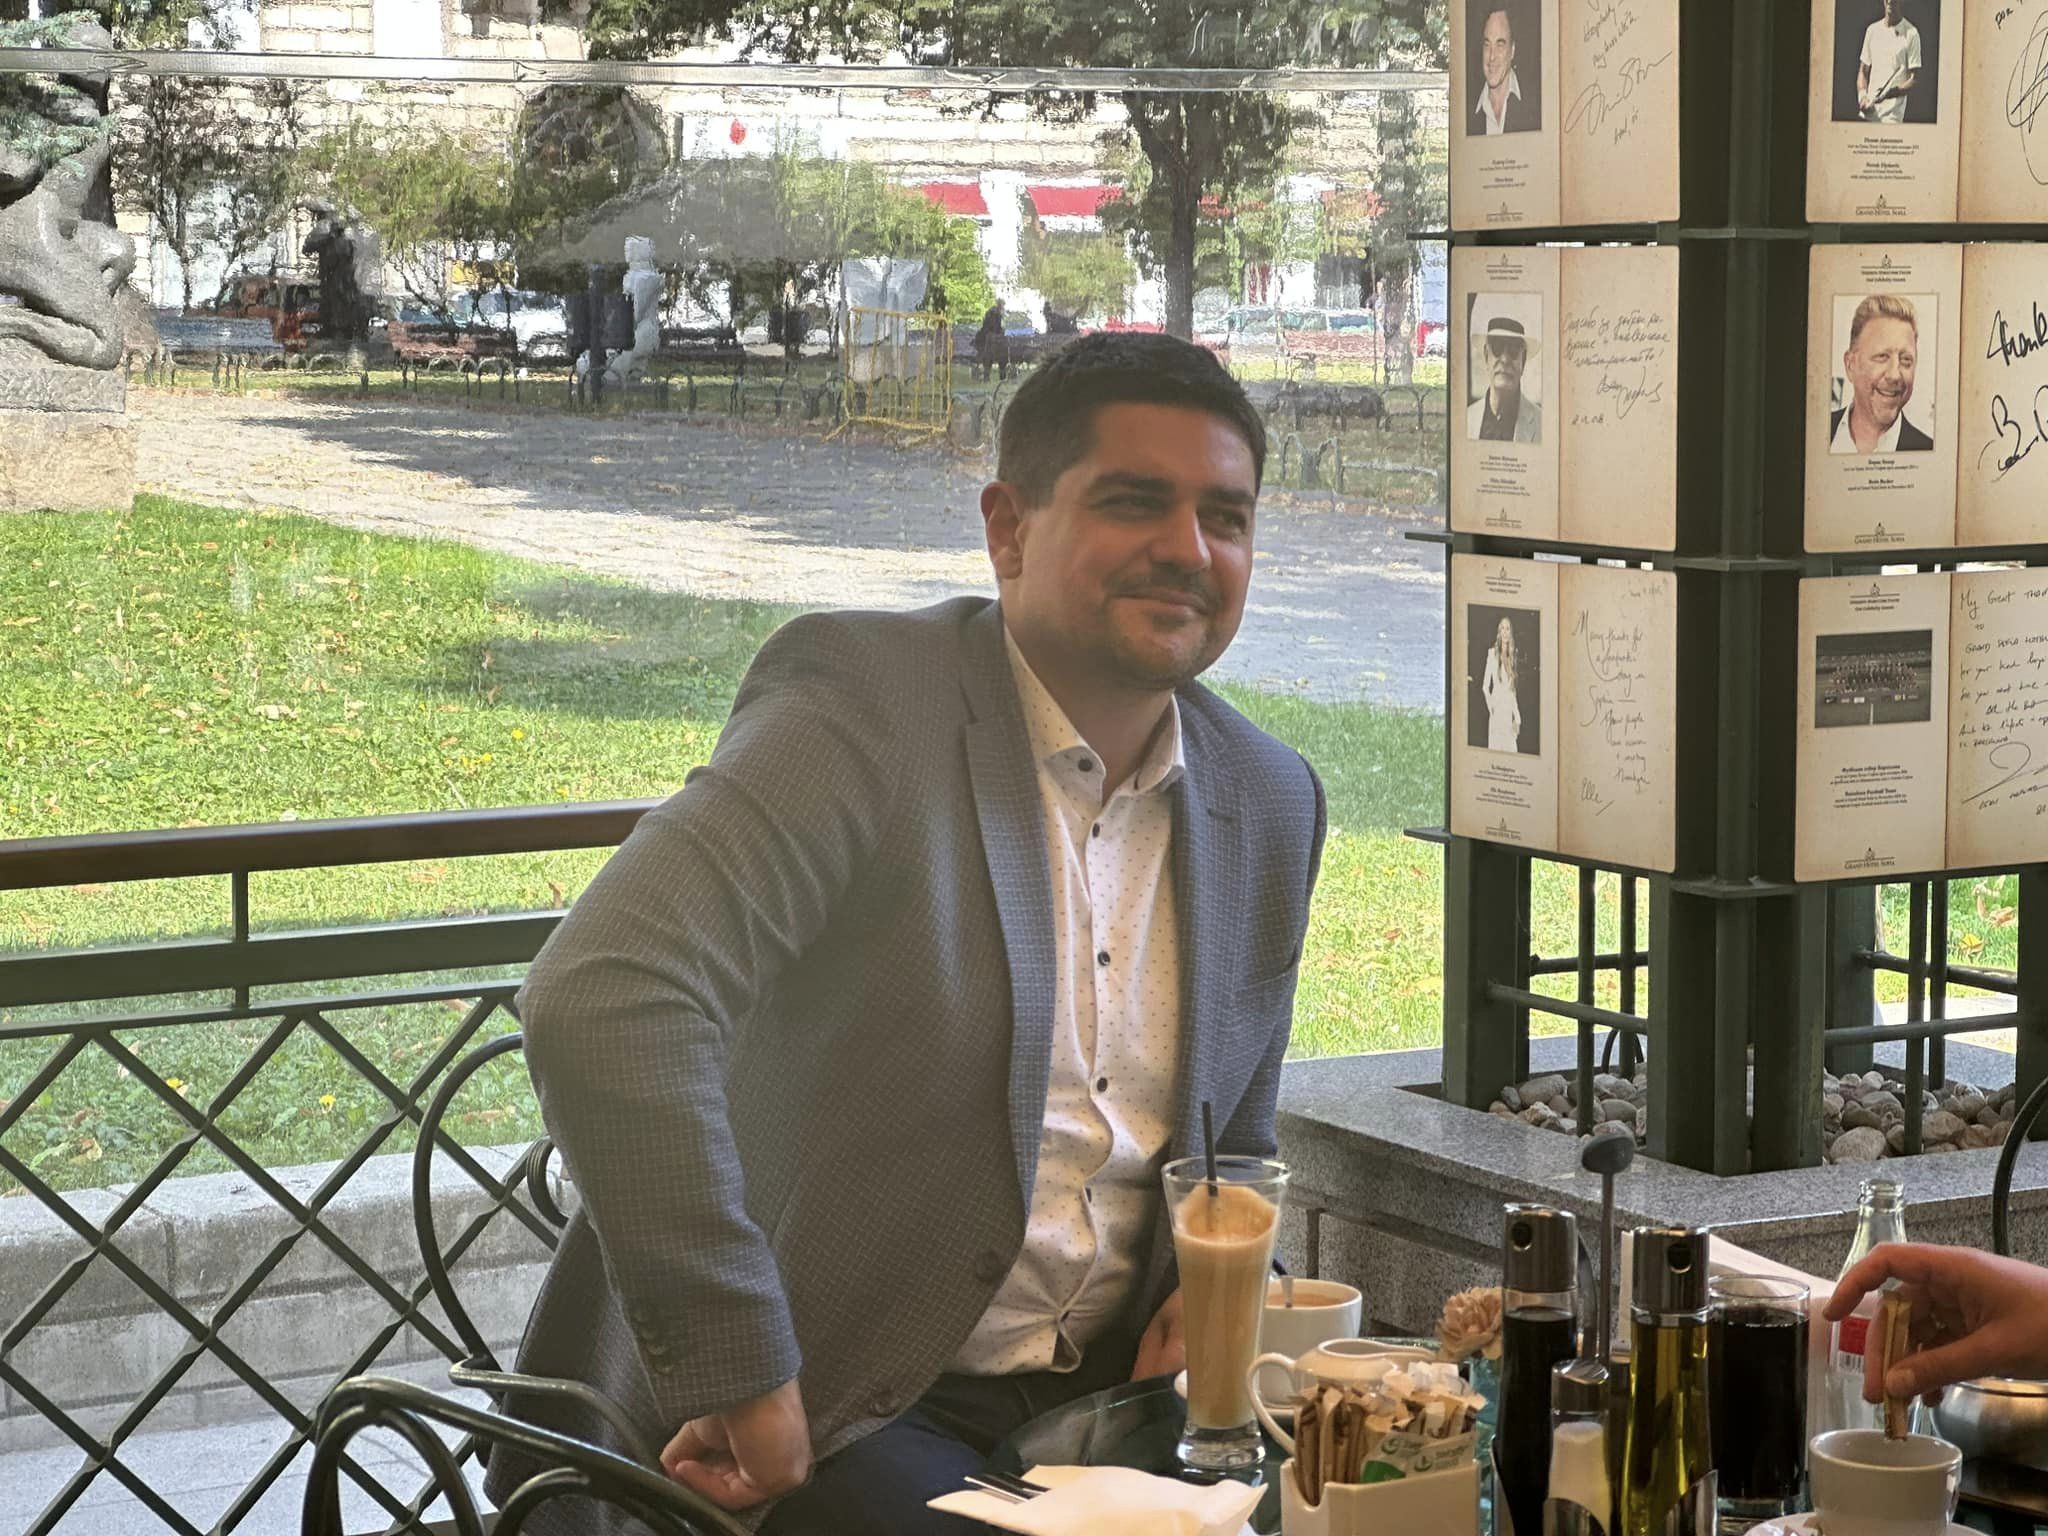 Радостин Василев си пие кафето в гранд хотел София докато Народното